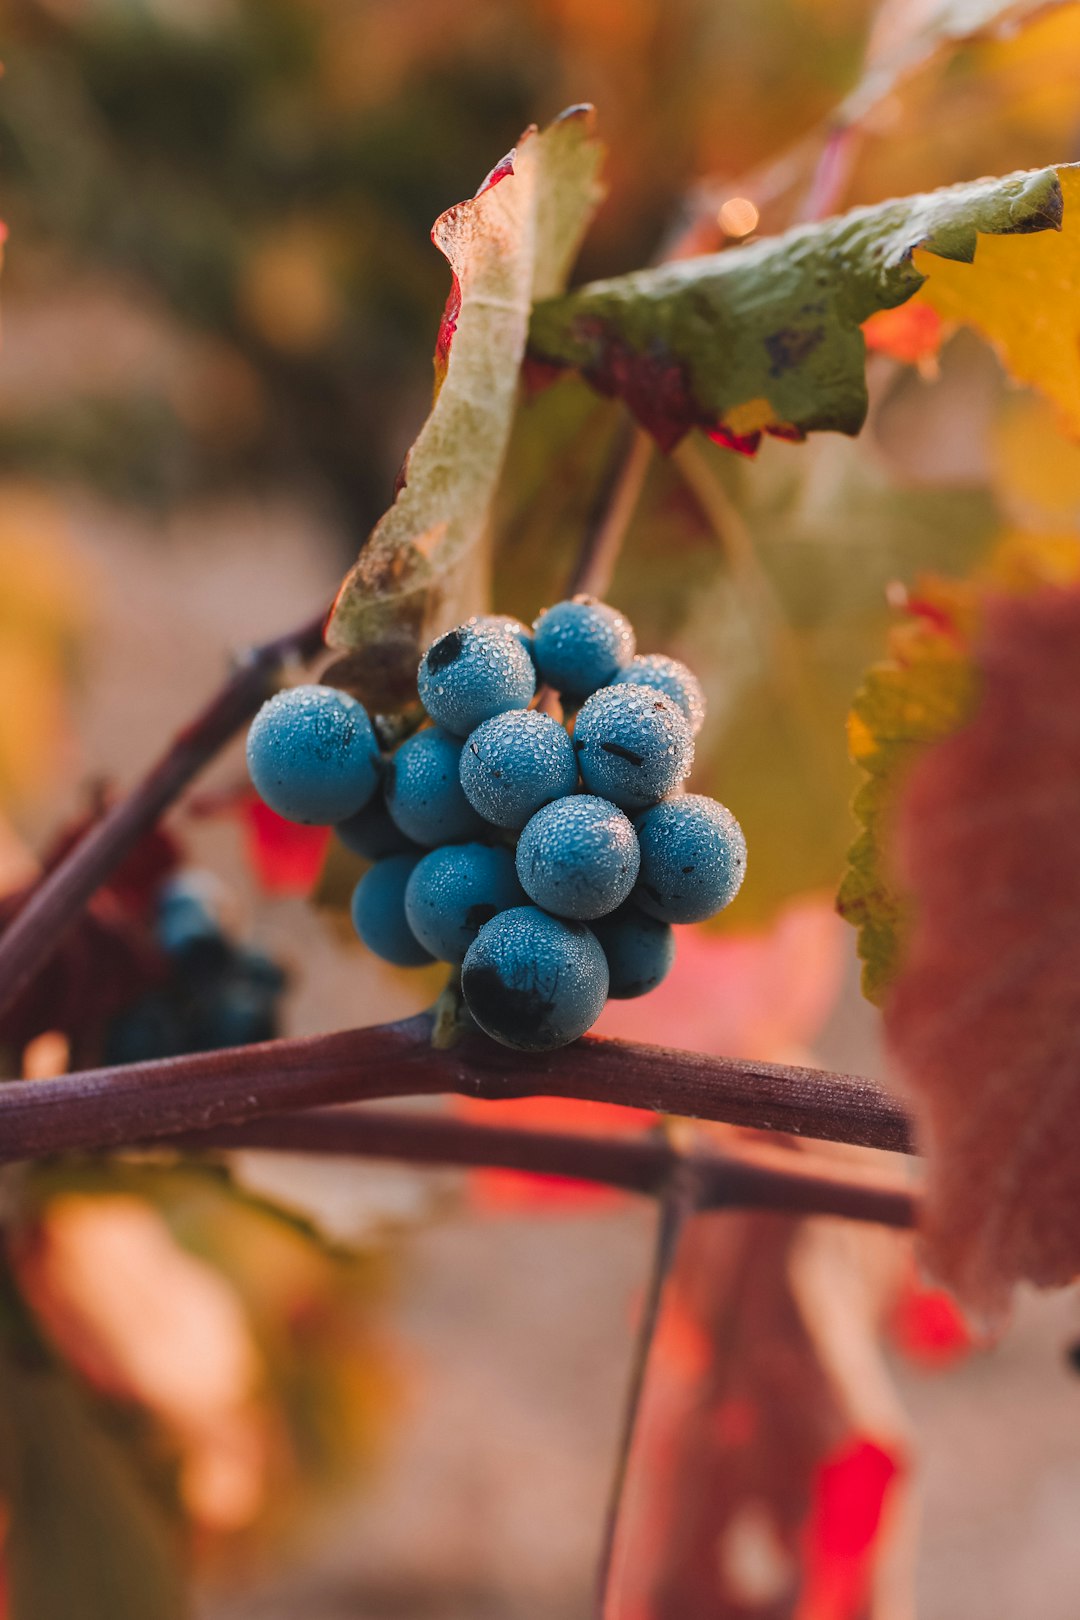 Comment pallier l’augmentation du niveau d’alcool dans les vins ?